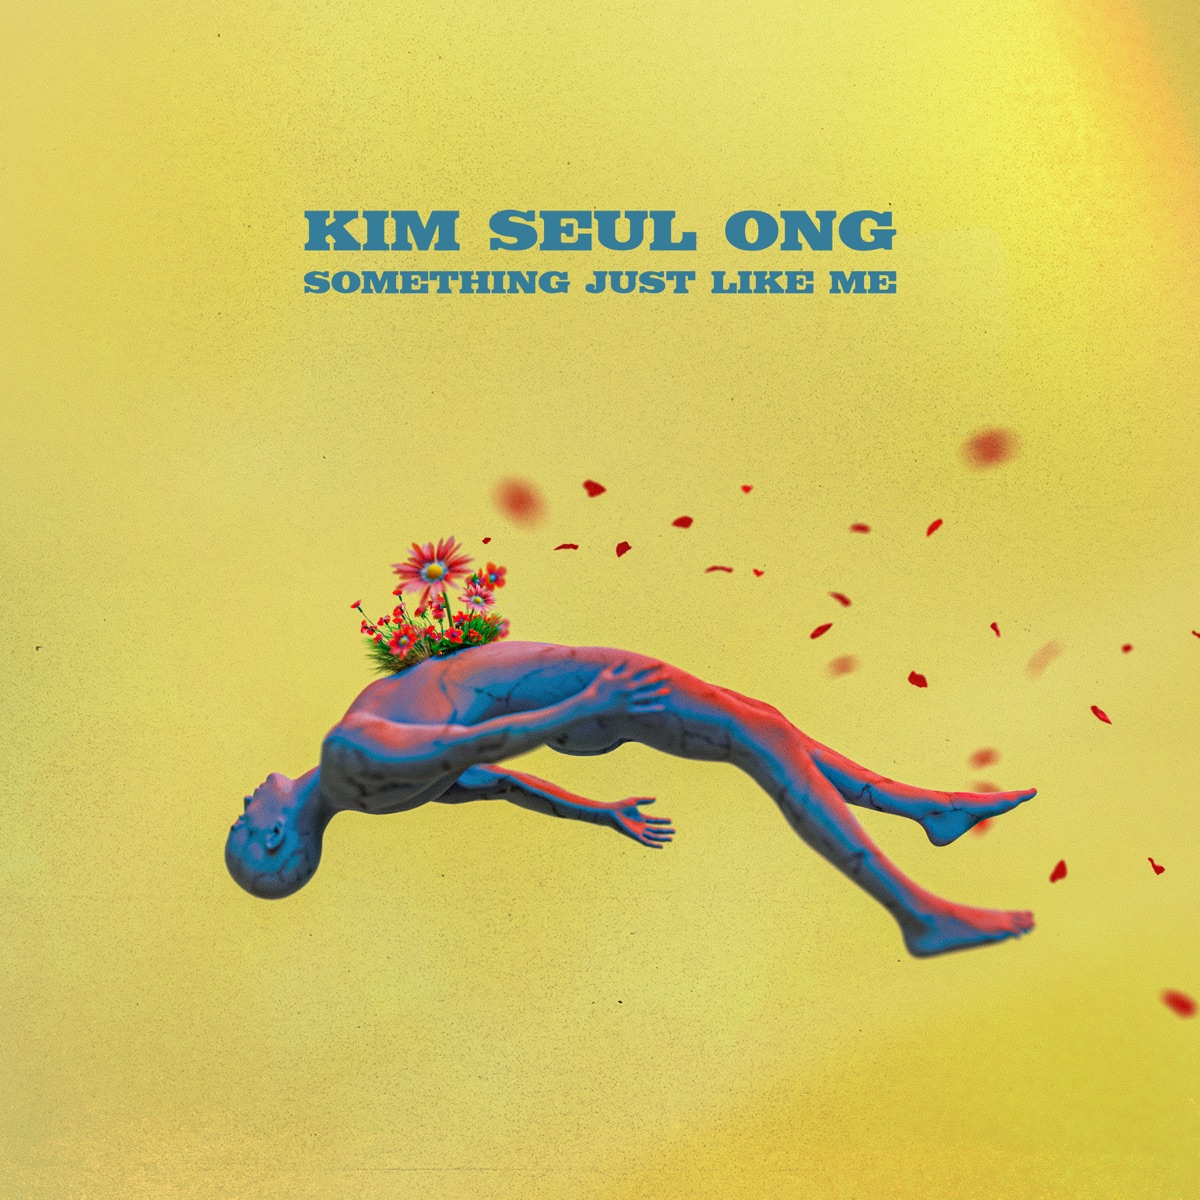 [DL MP3 + FLAC] Kim Seul Ong - SOMETHING JUST LIKE ME - EP - KPOPJJANG